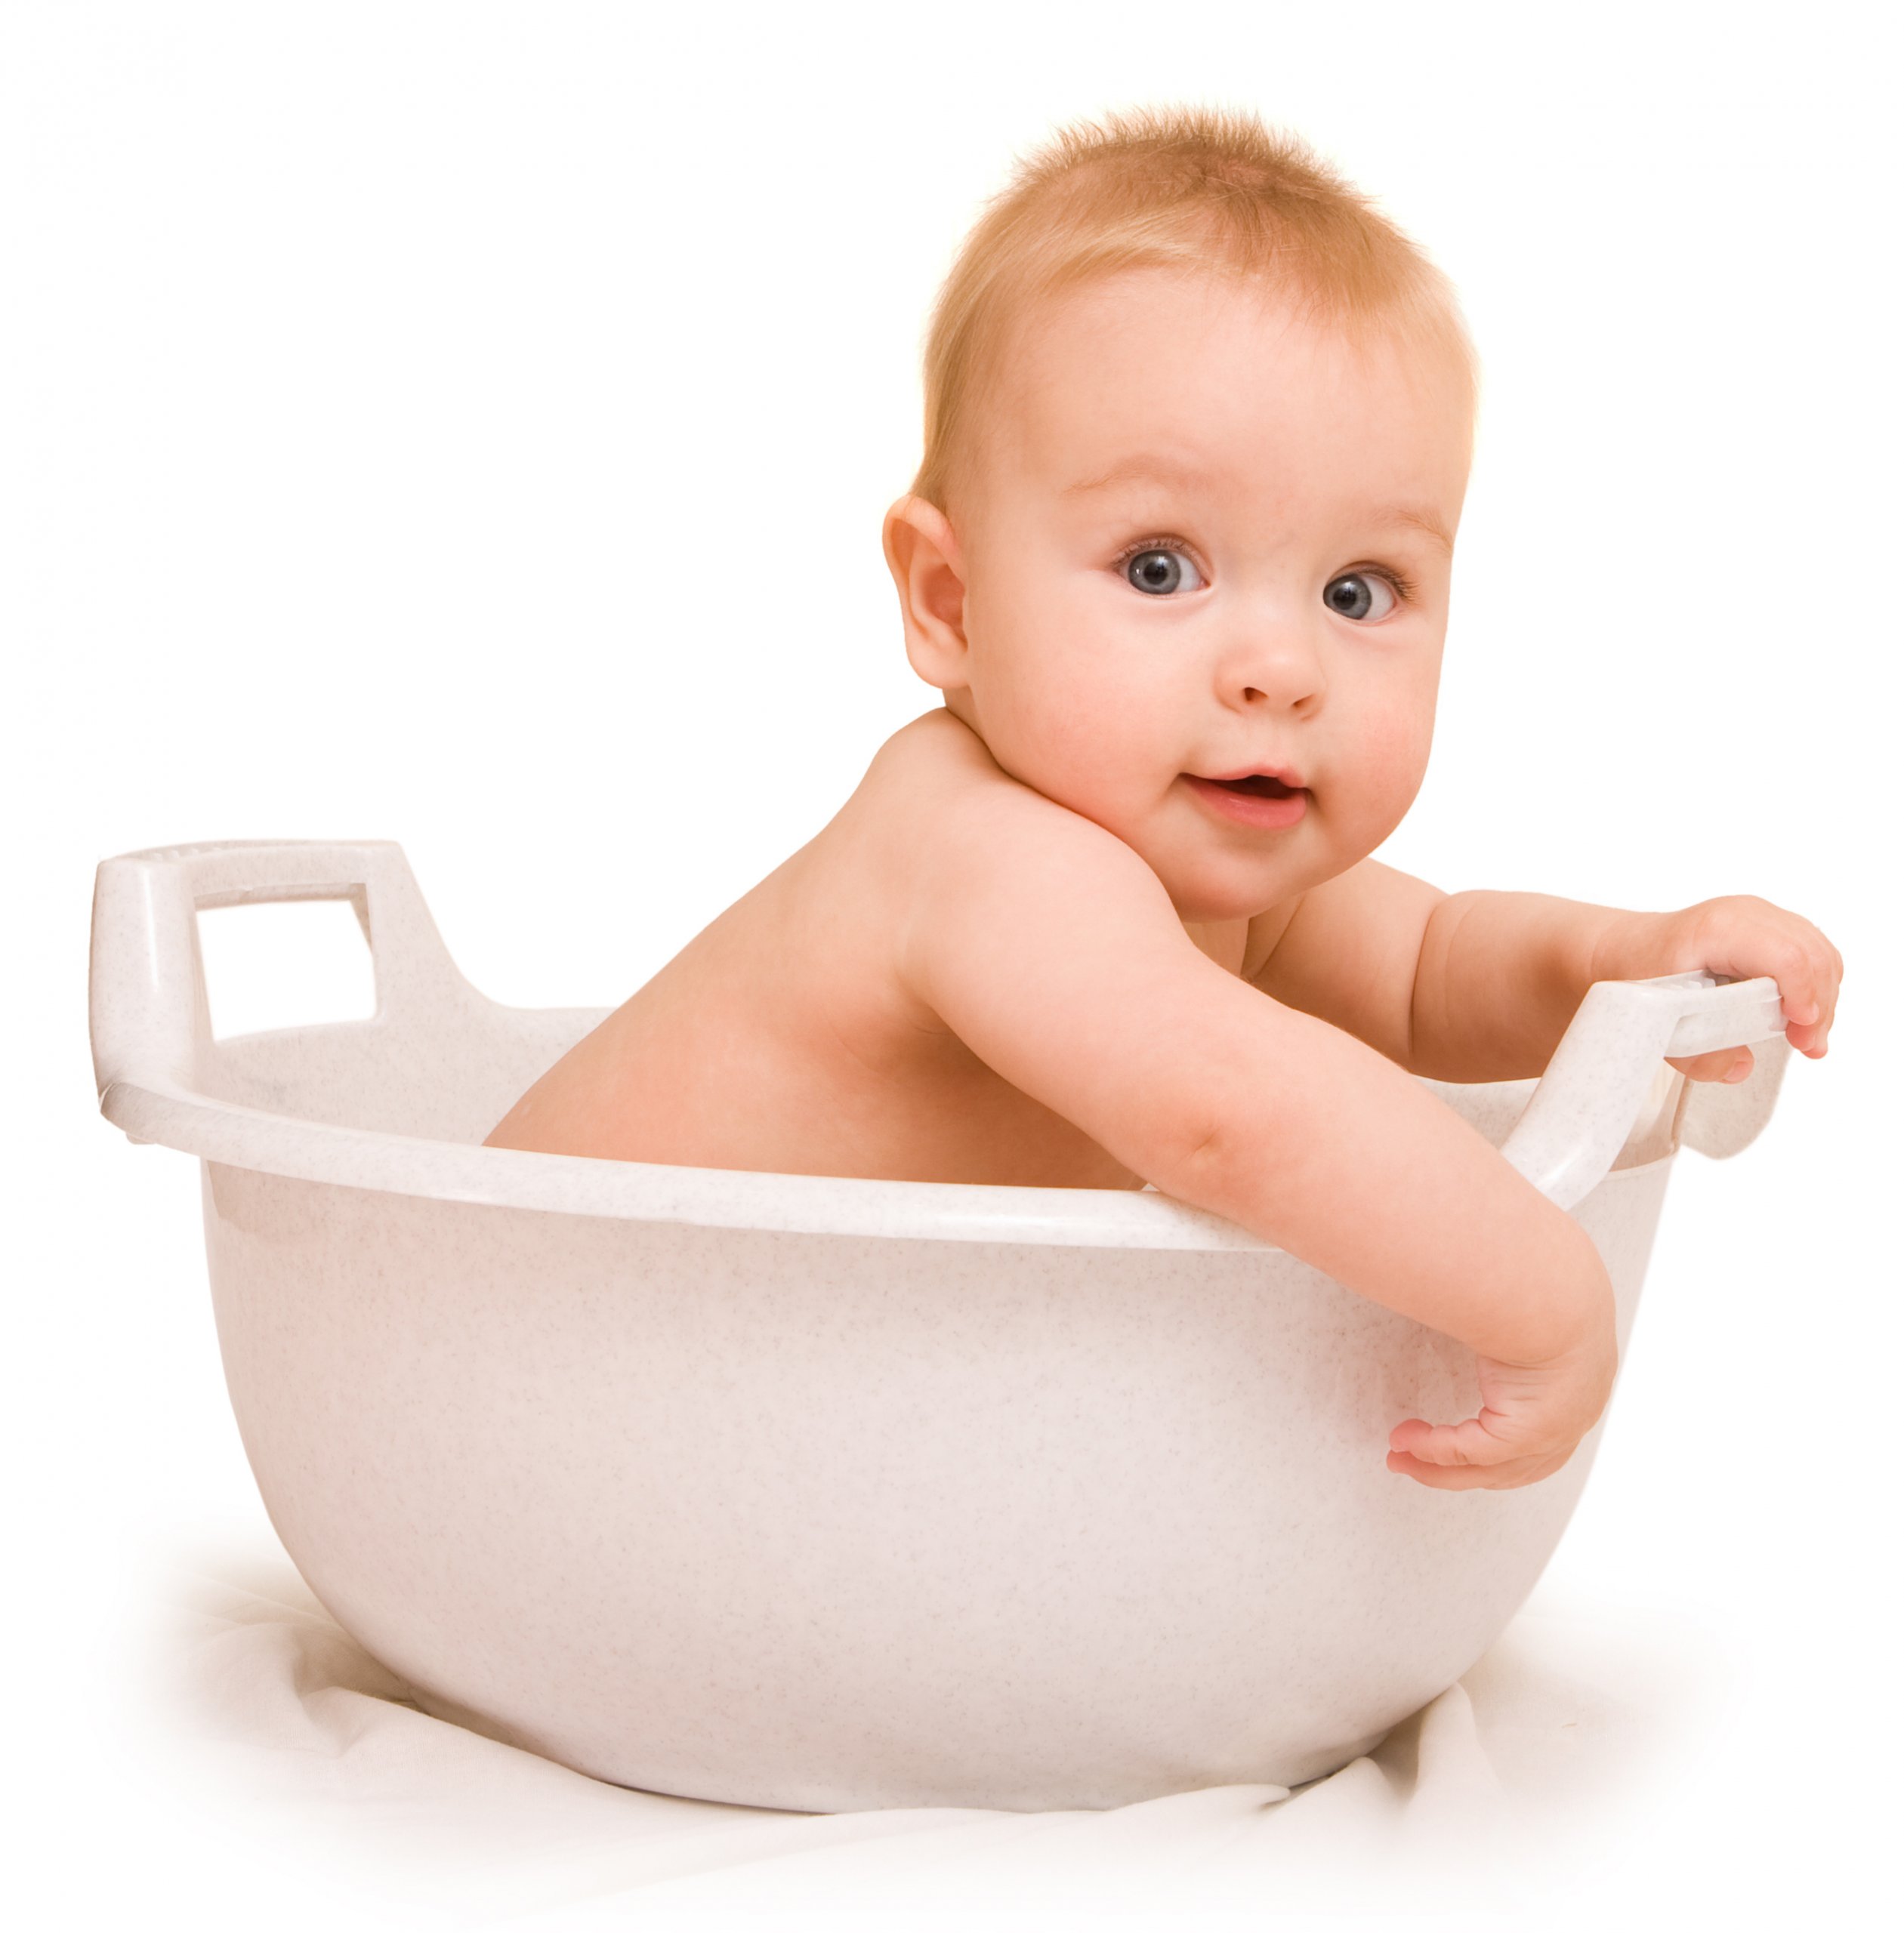 cute baby in a bath tub